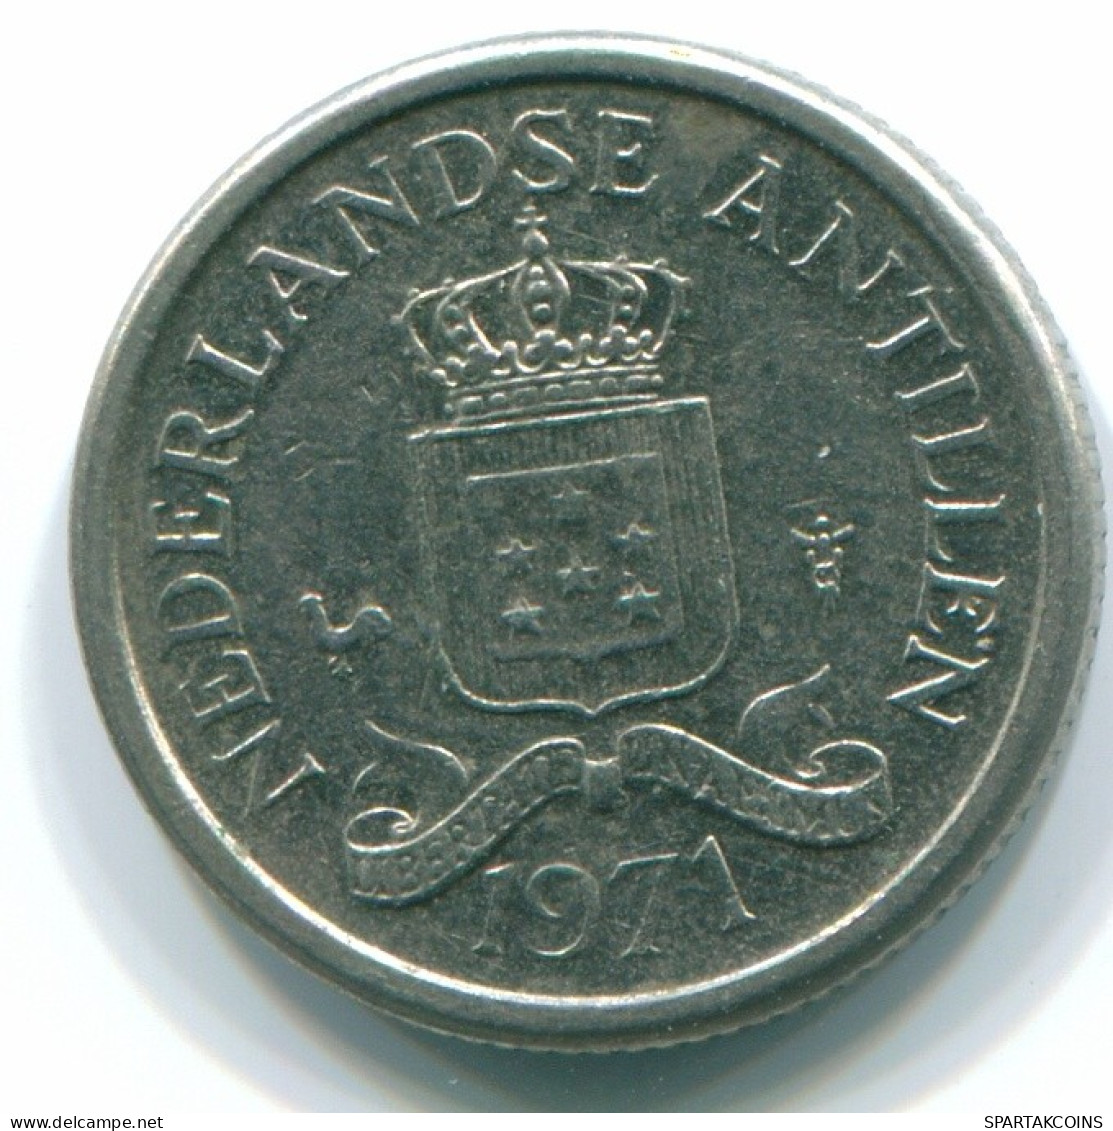 10 CENTS 1971 NETHERLANDS ANTILLES Nickel Colonial Coin #S13488.U.A - Niederländische Antillen